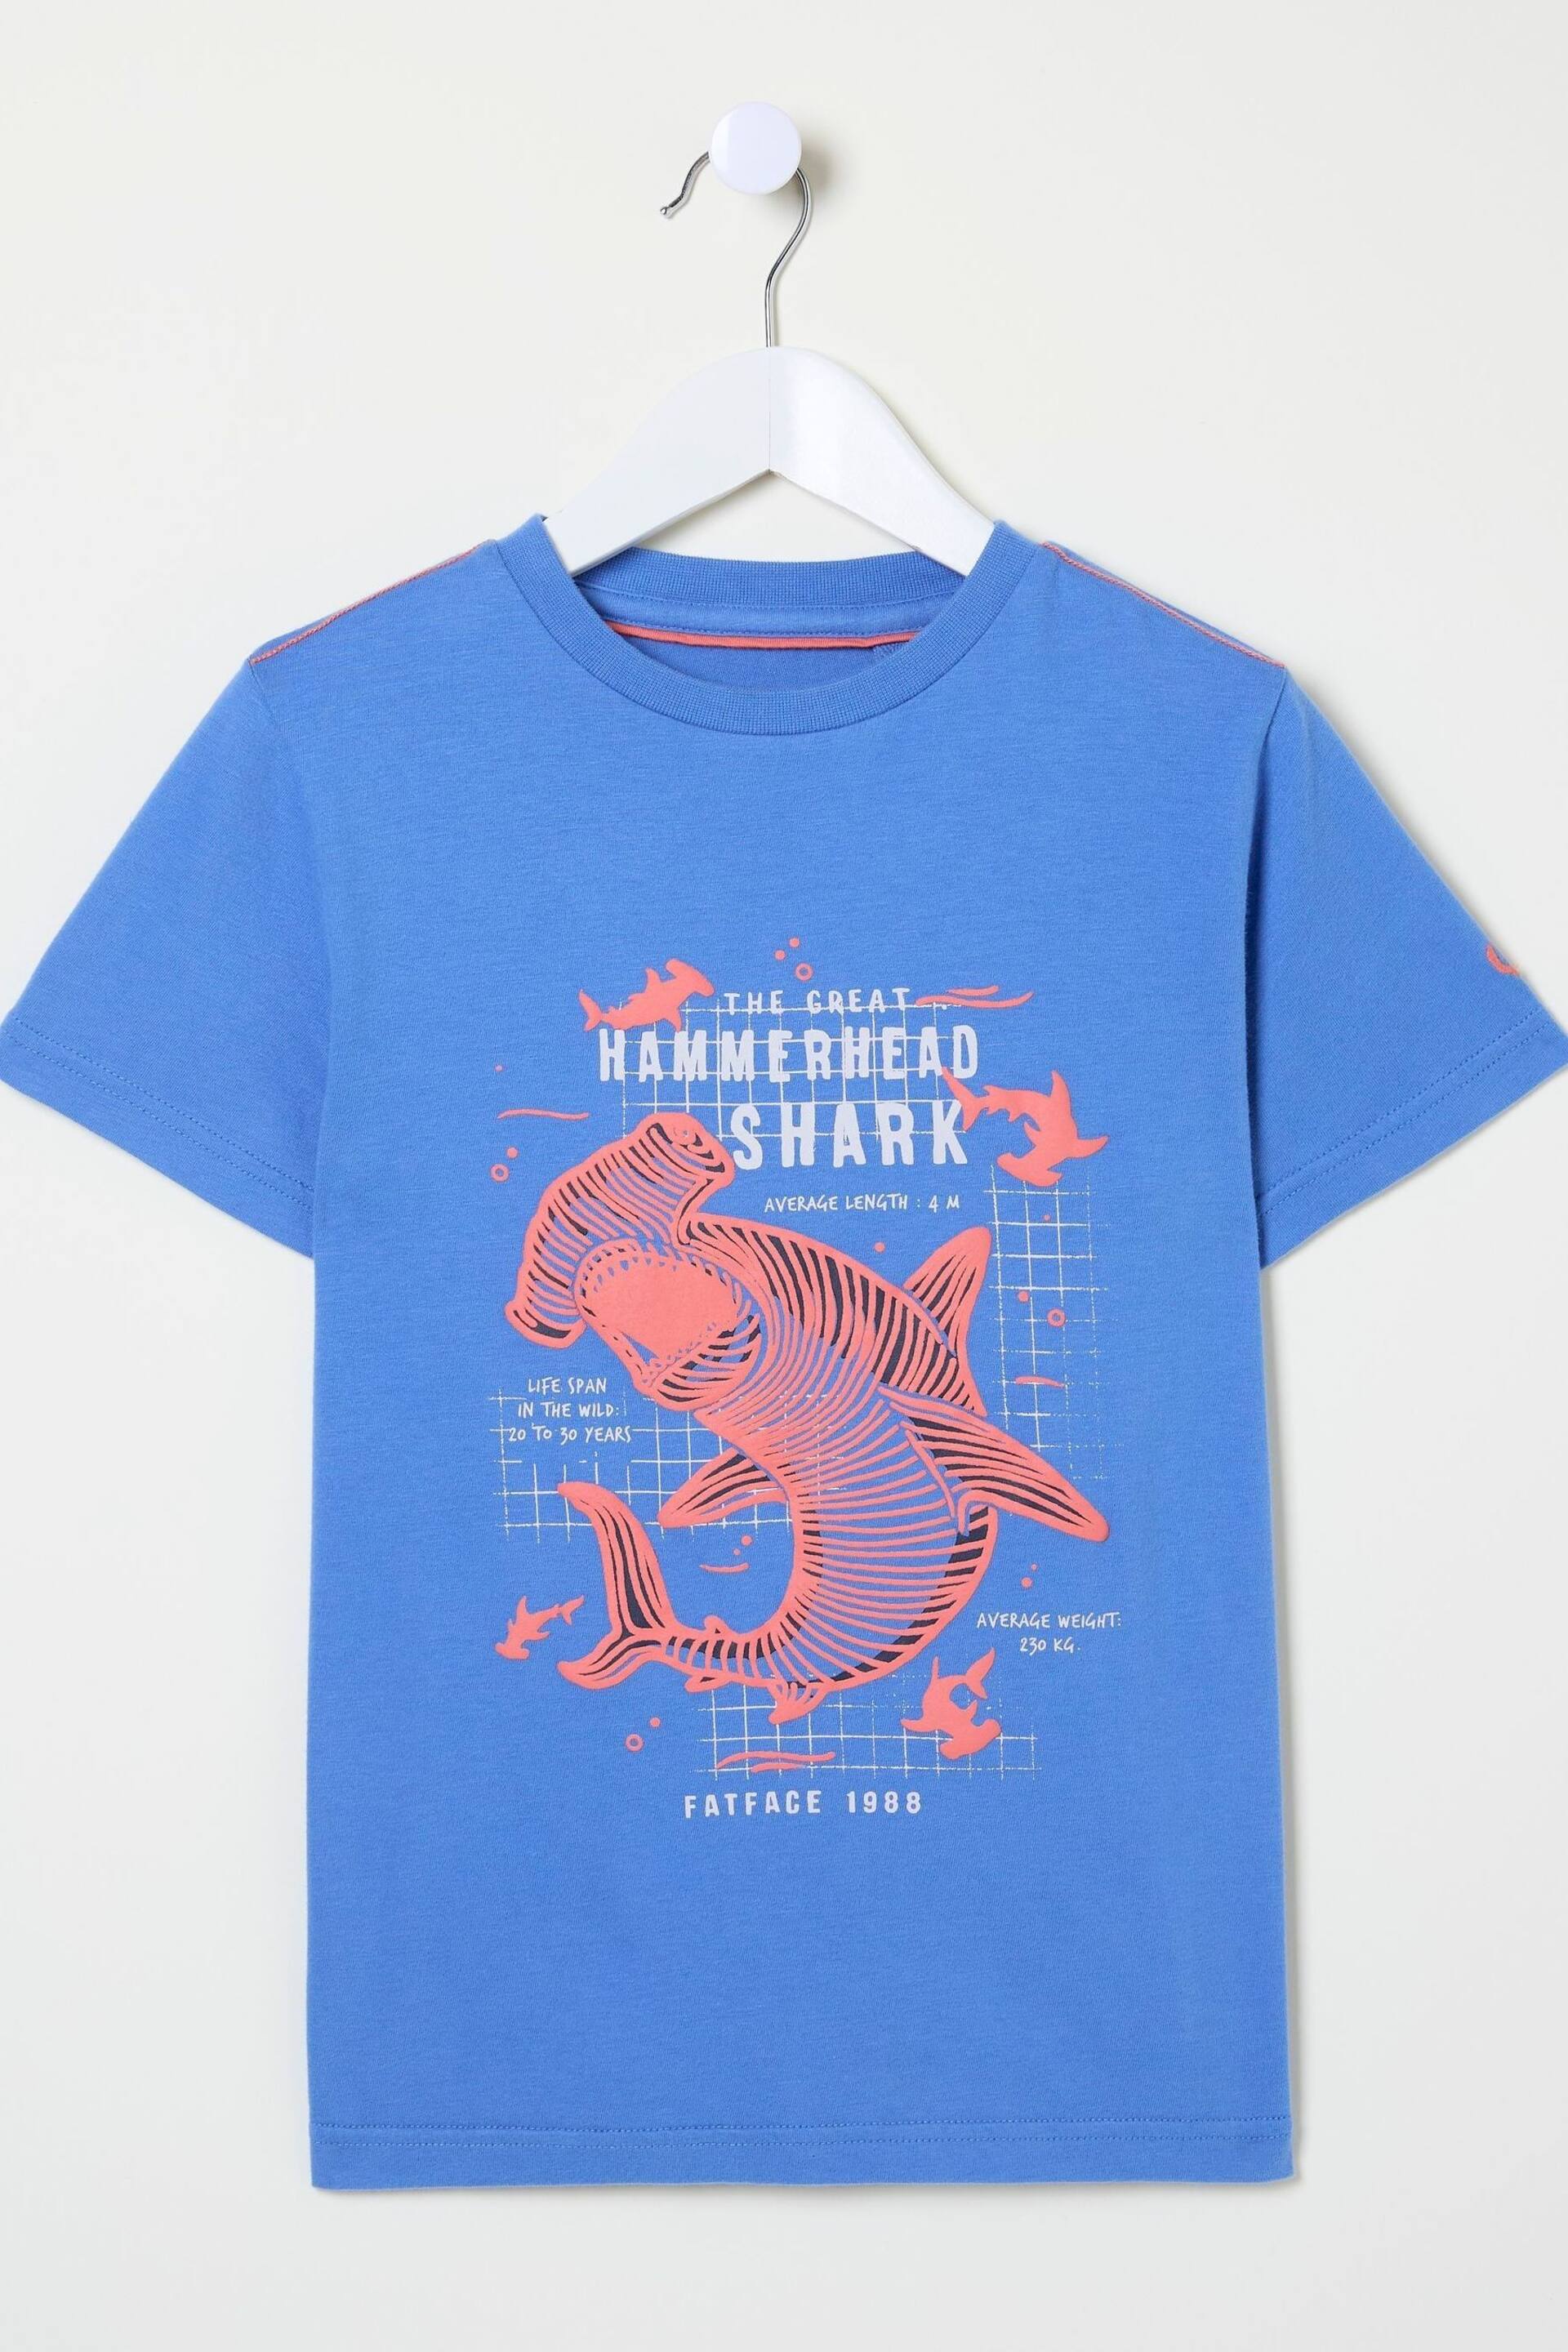 FatFace Blue Hammerhead Shark T-Shirt - Image 4 of 4